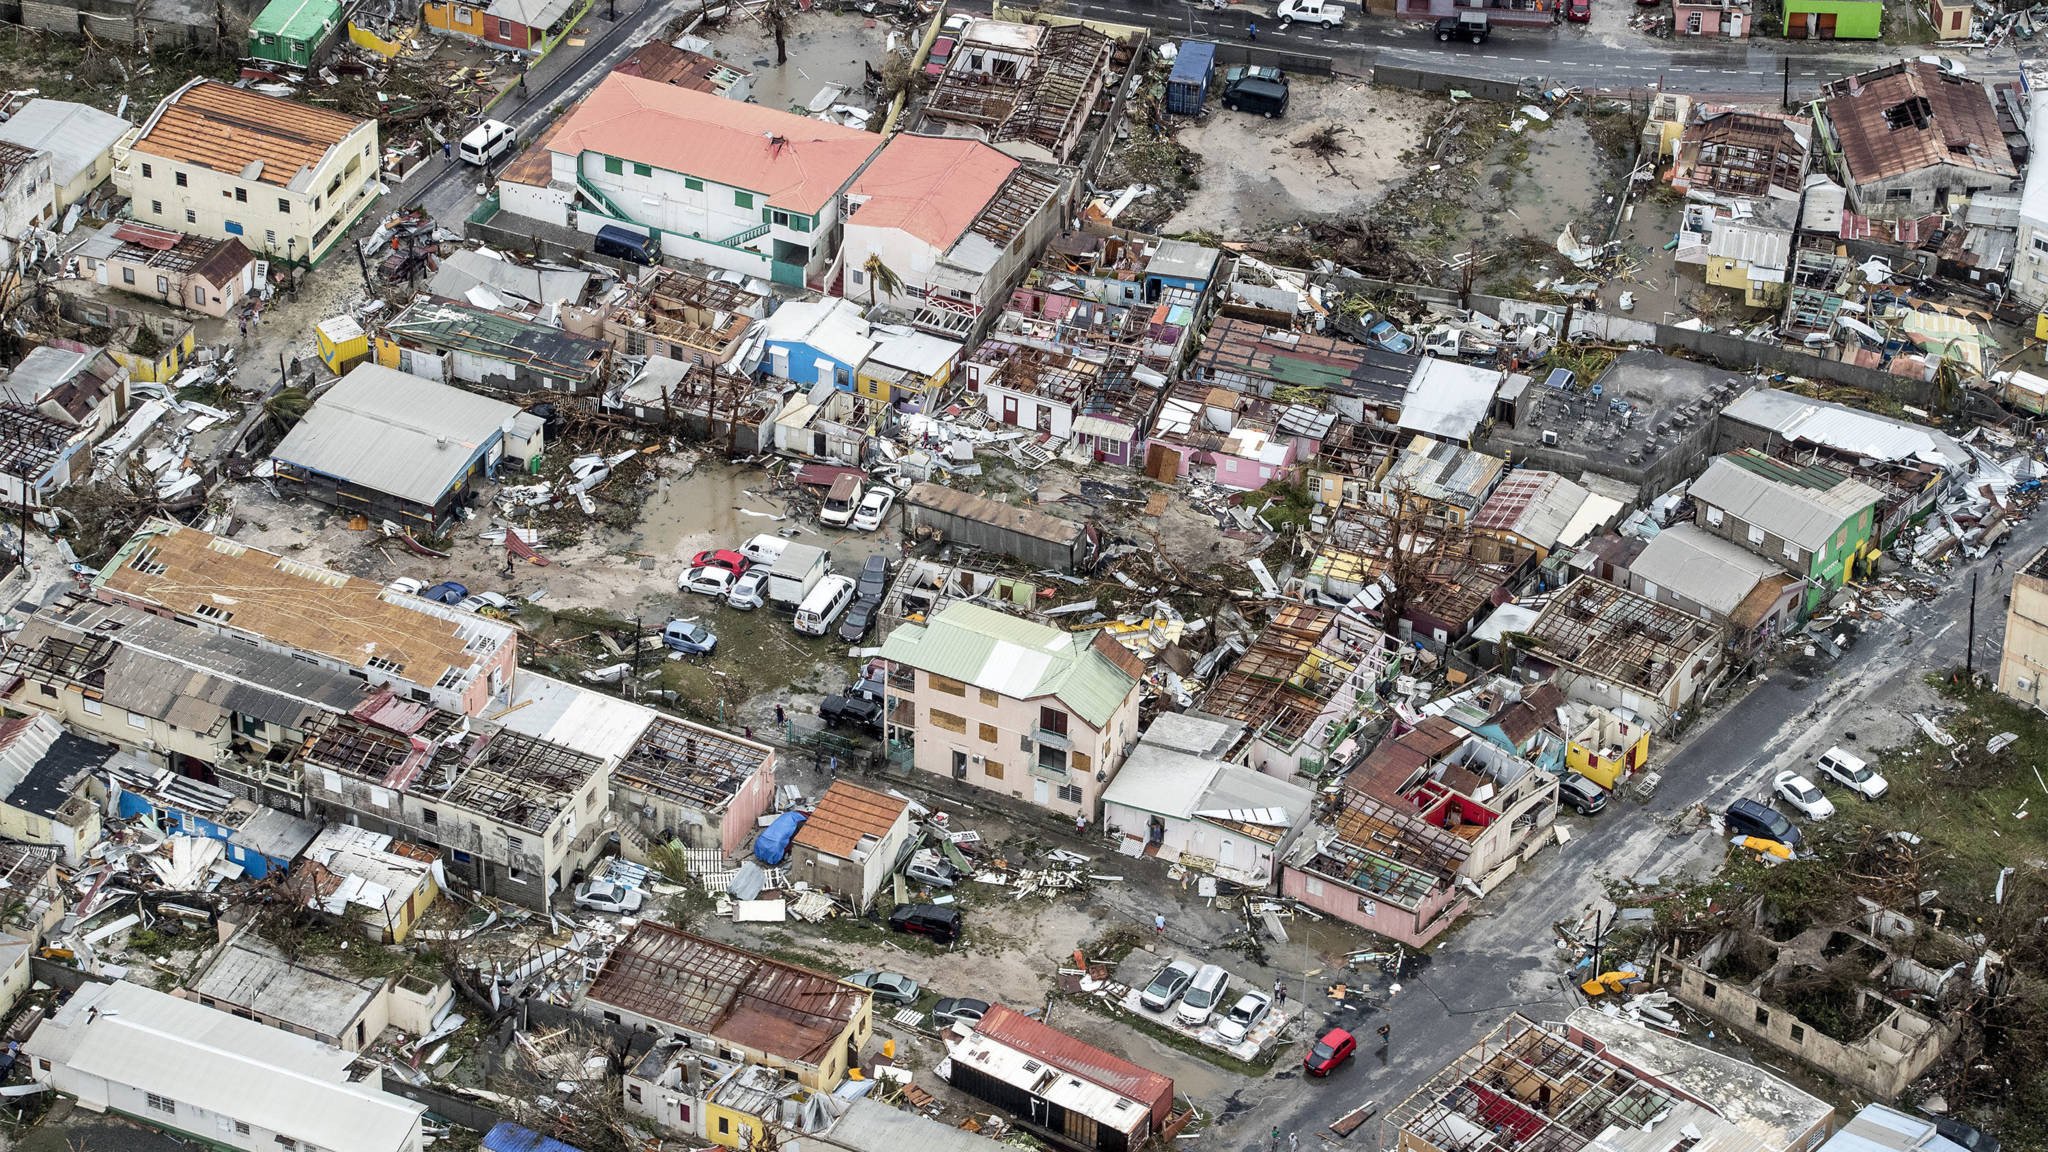 Bevolking Sint-Maarten getraumatiseerd na orkaan Irma' | NOS